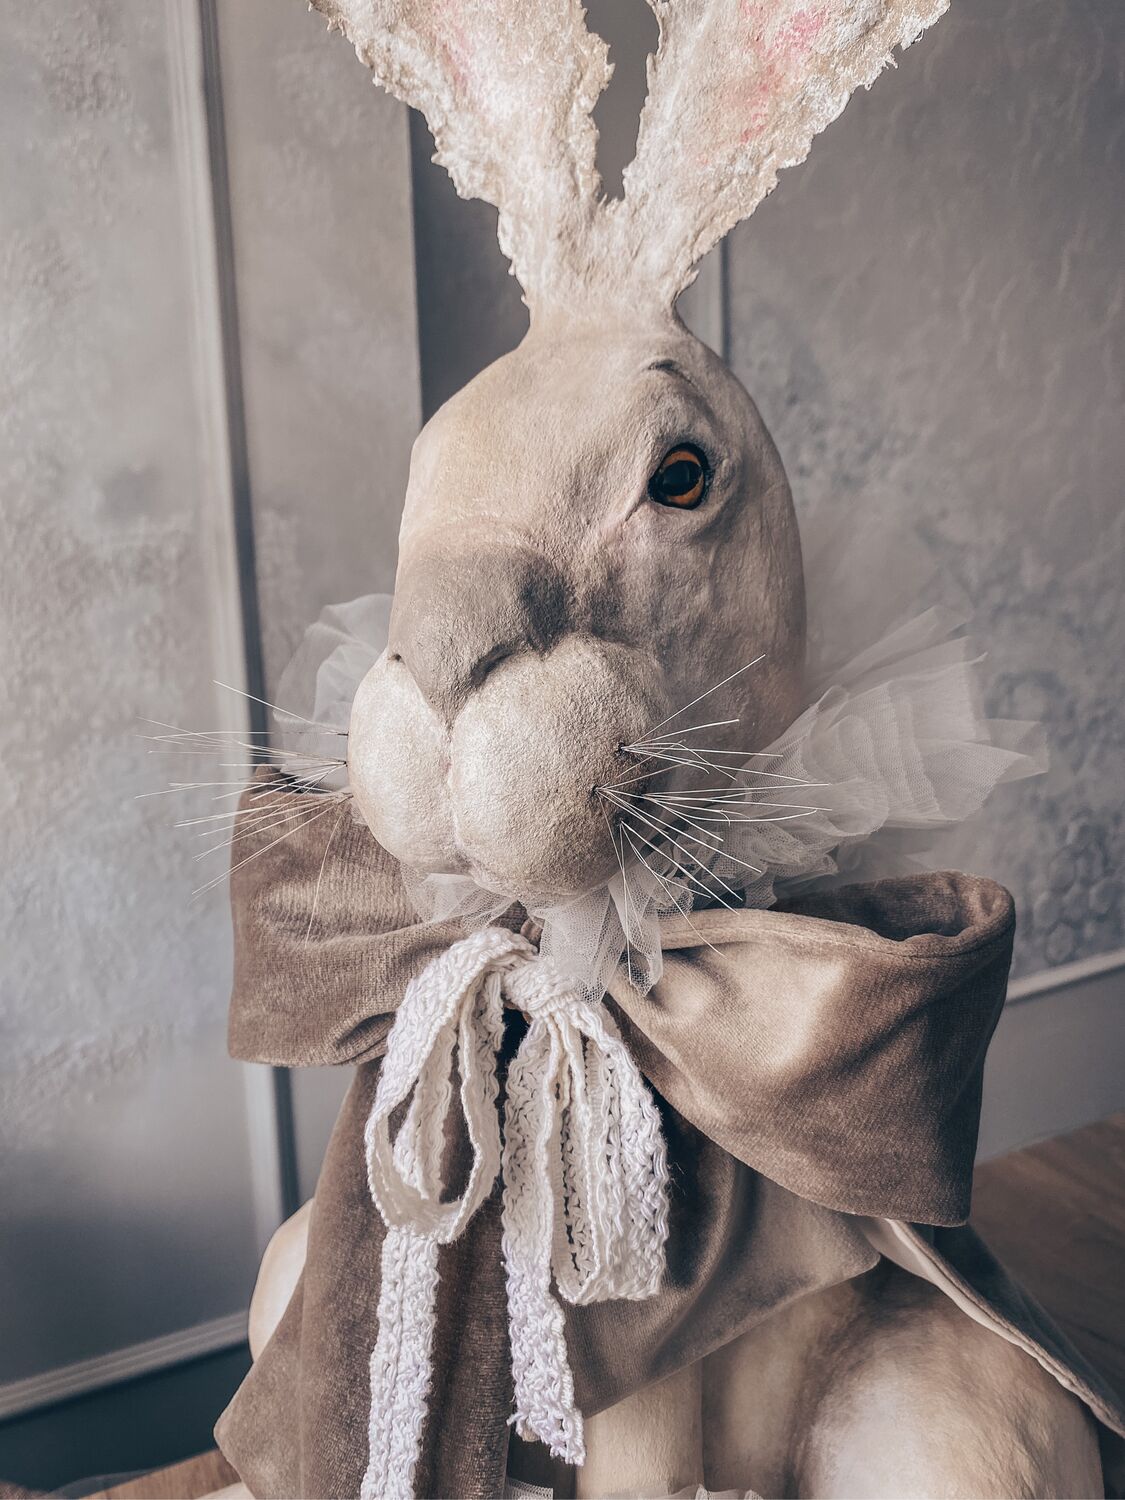 Пасхальные кролики - переделка FixPrice. Paperclay (папье-маше). Праздничный декор своими руками.